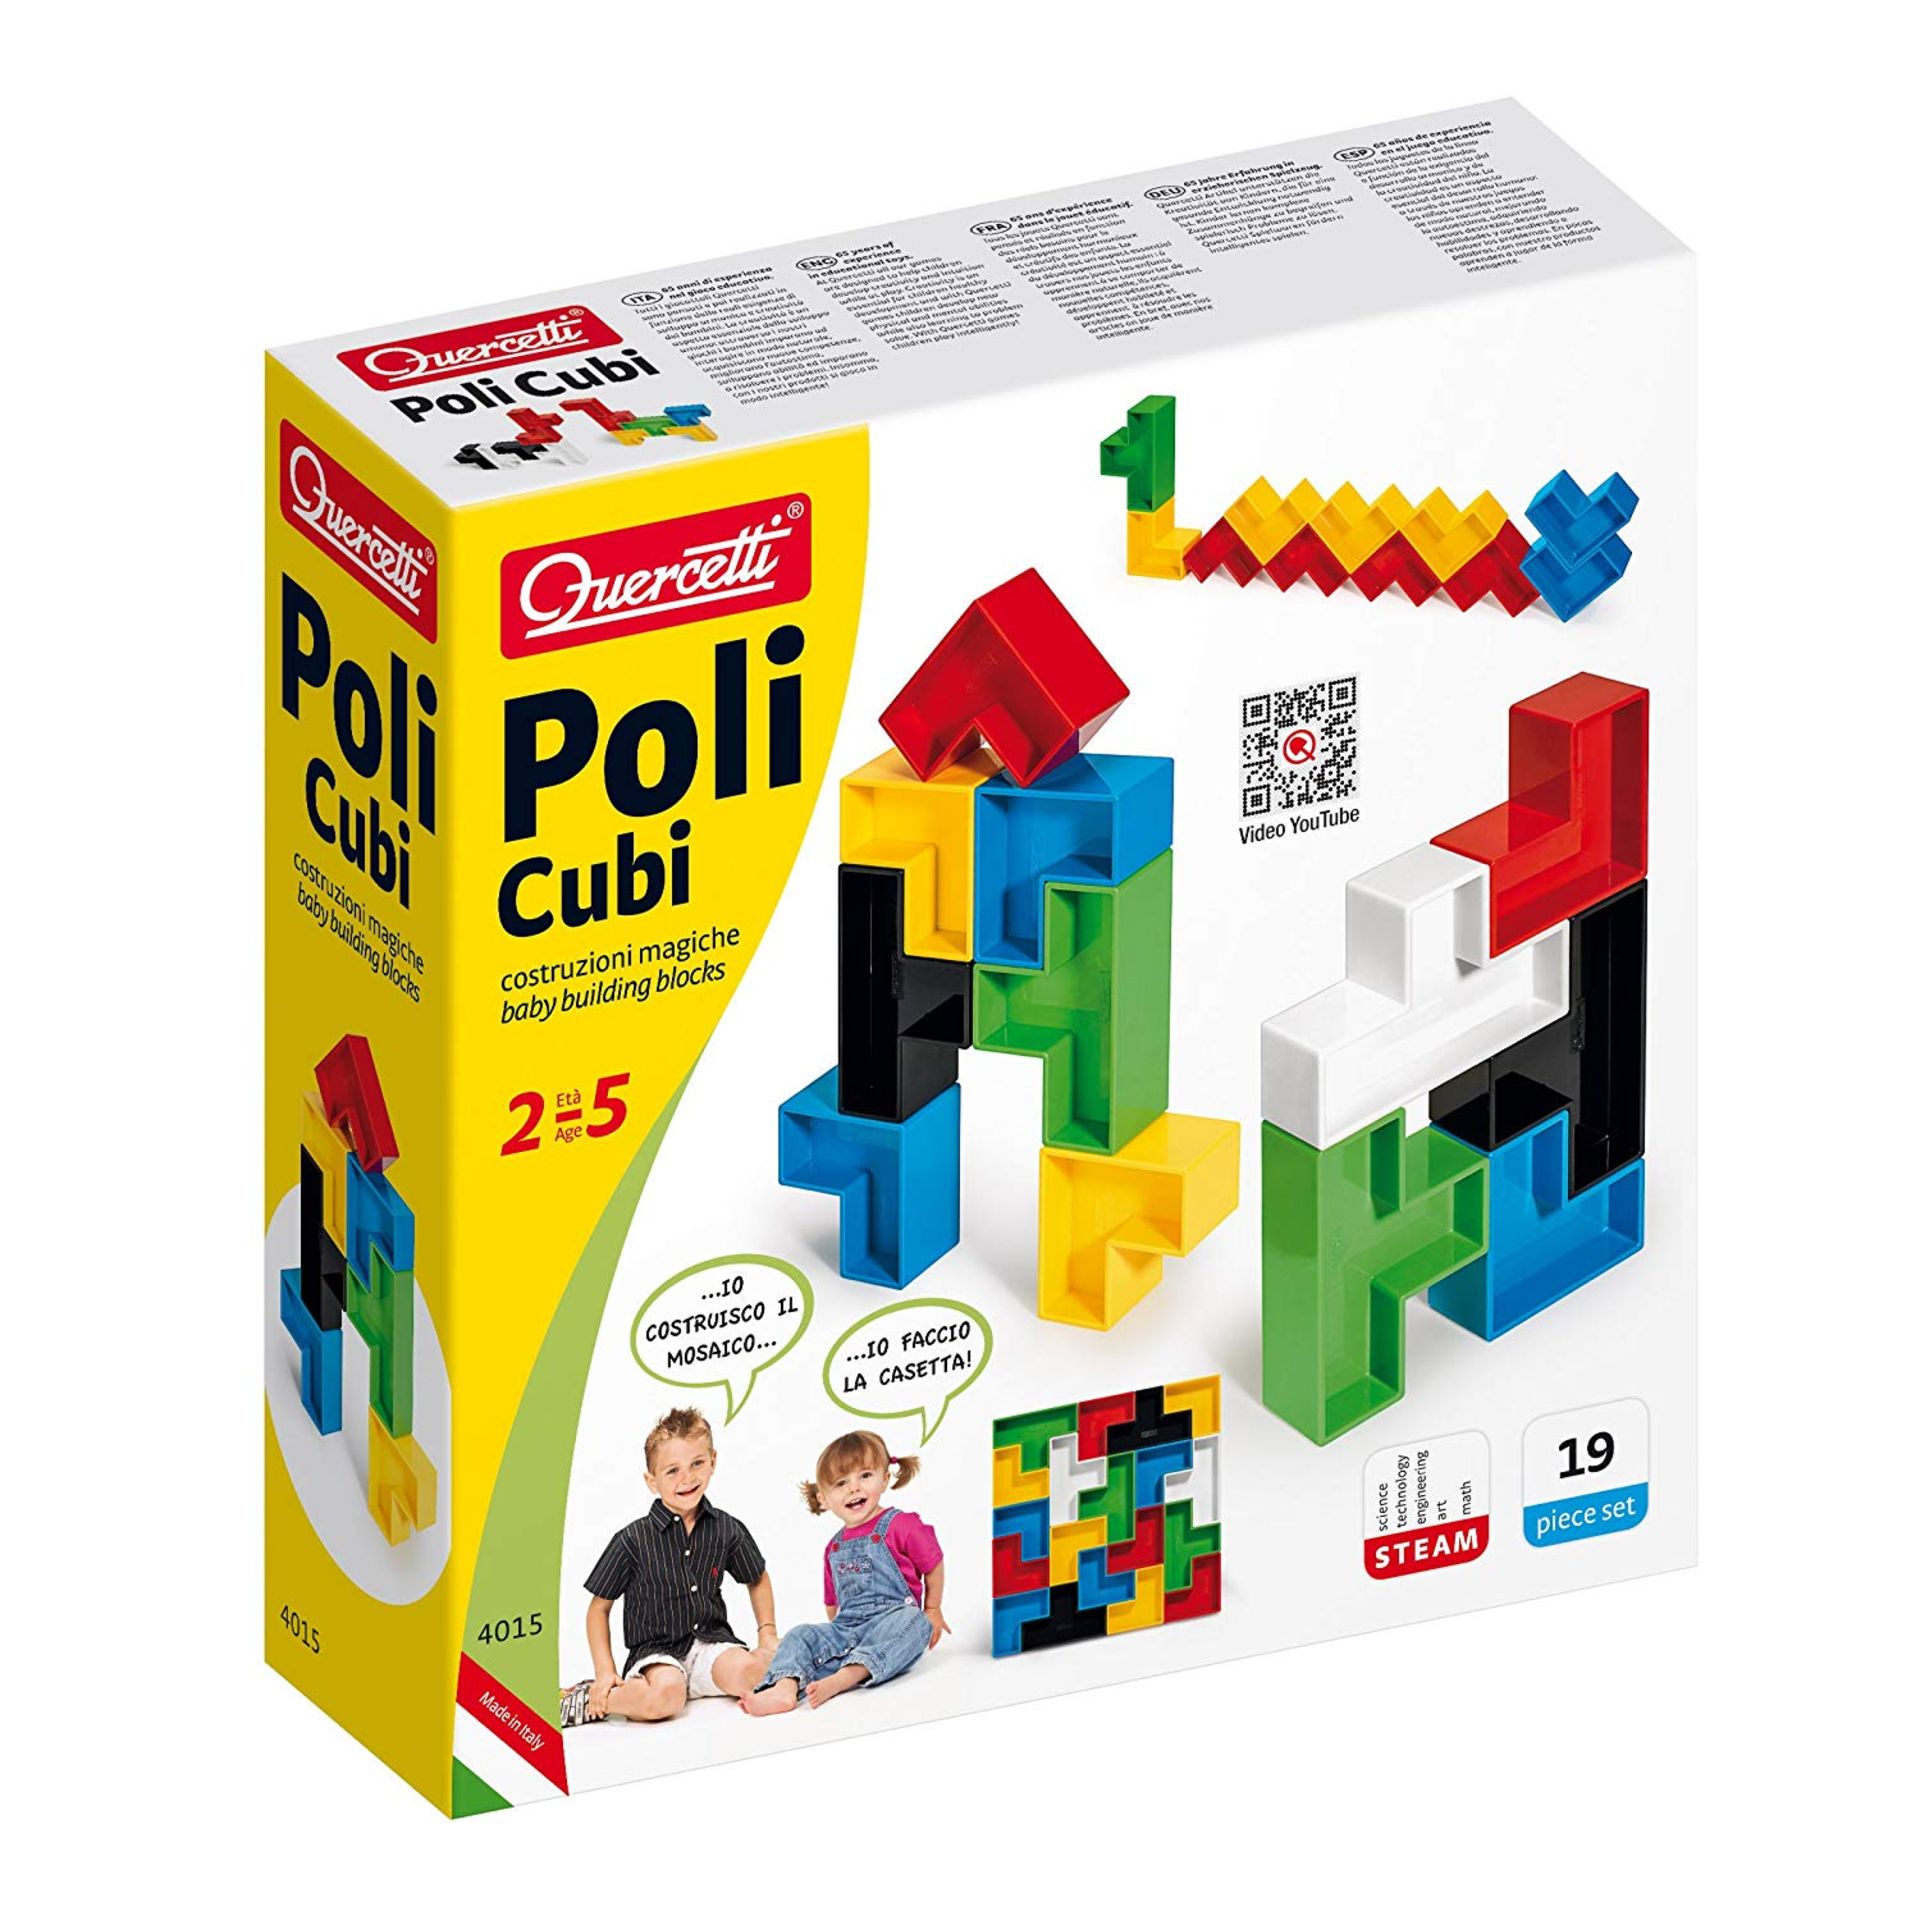 82 x Quercetti Poli Cubi Construction Magic Set RRP £2623.18